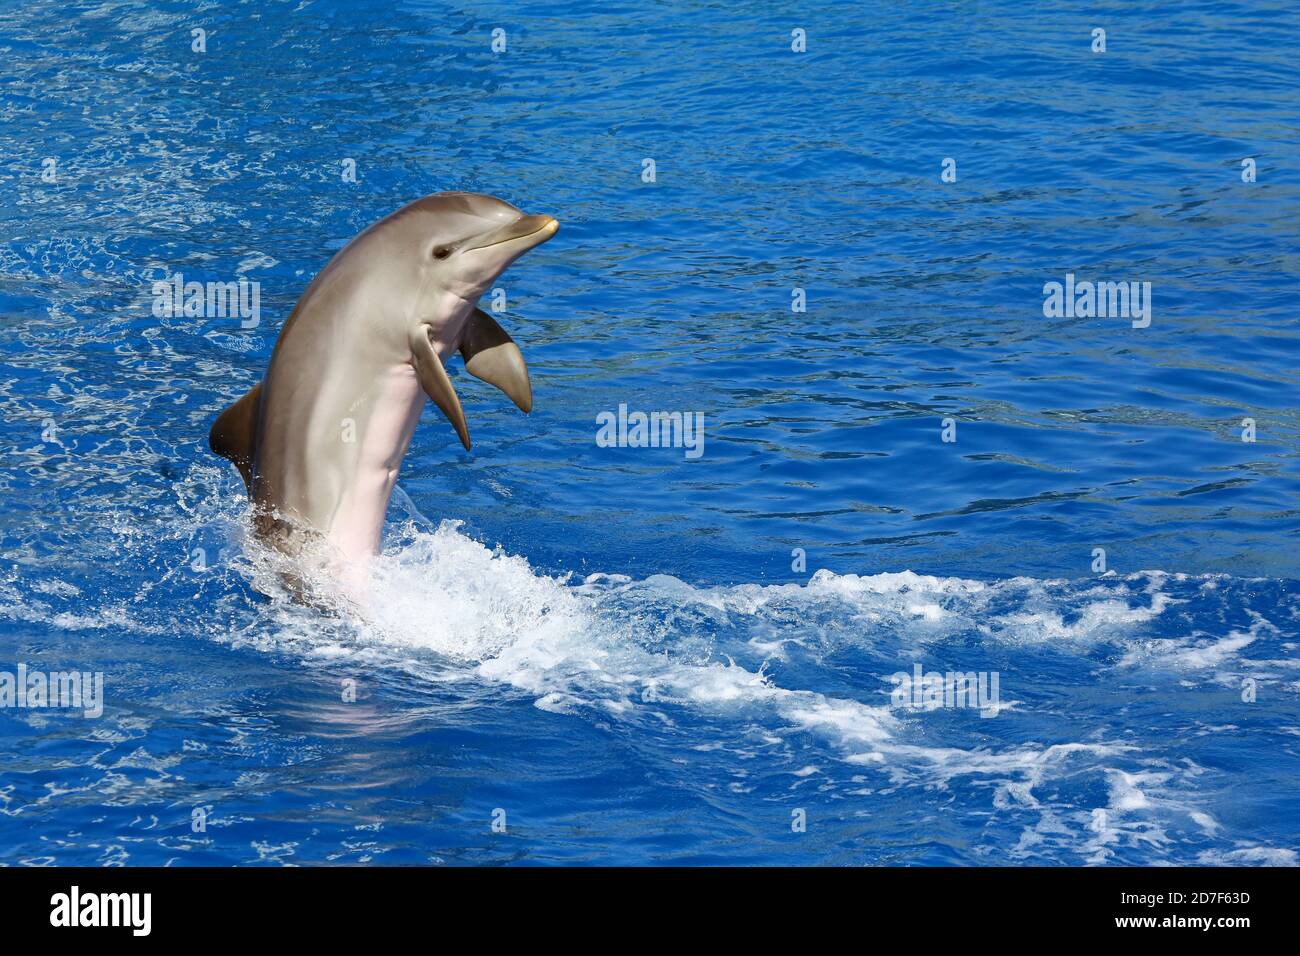 Dolphin exhibition in Aquarium Stock Photo